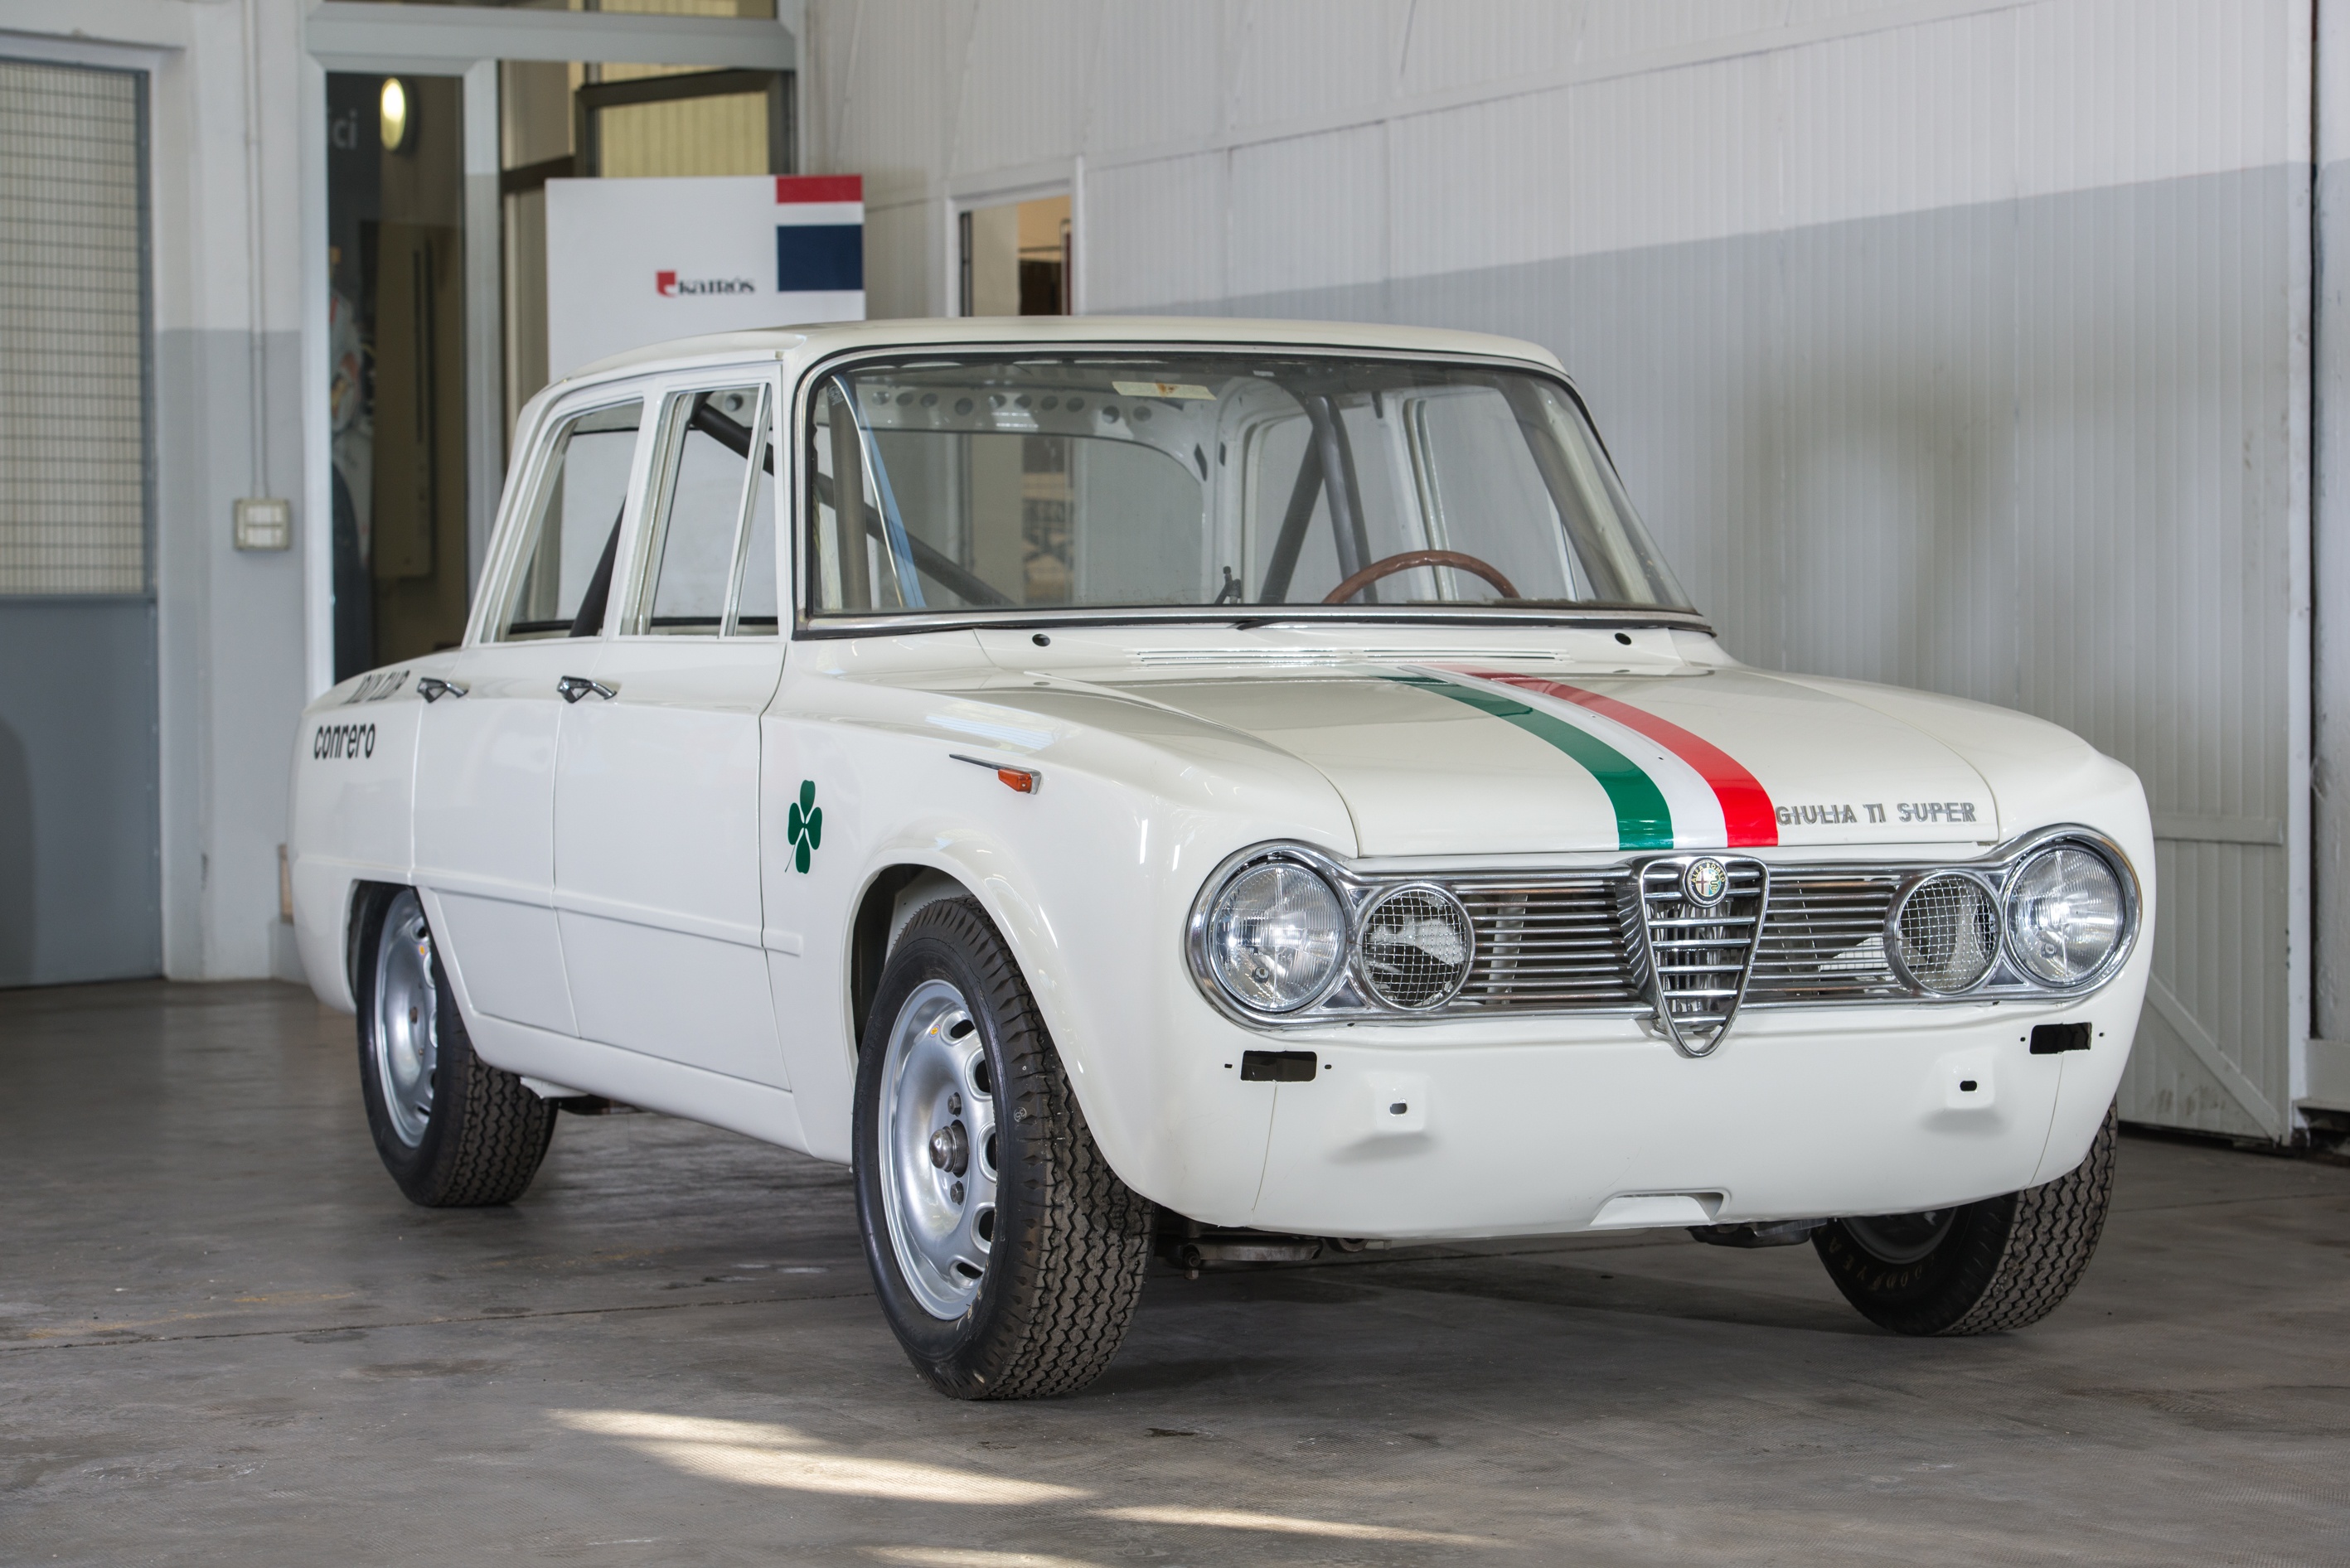 1964 Alfa Romeo Giulia Ti Super Classic Driver Market